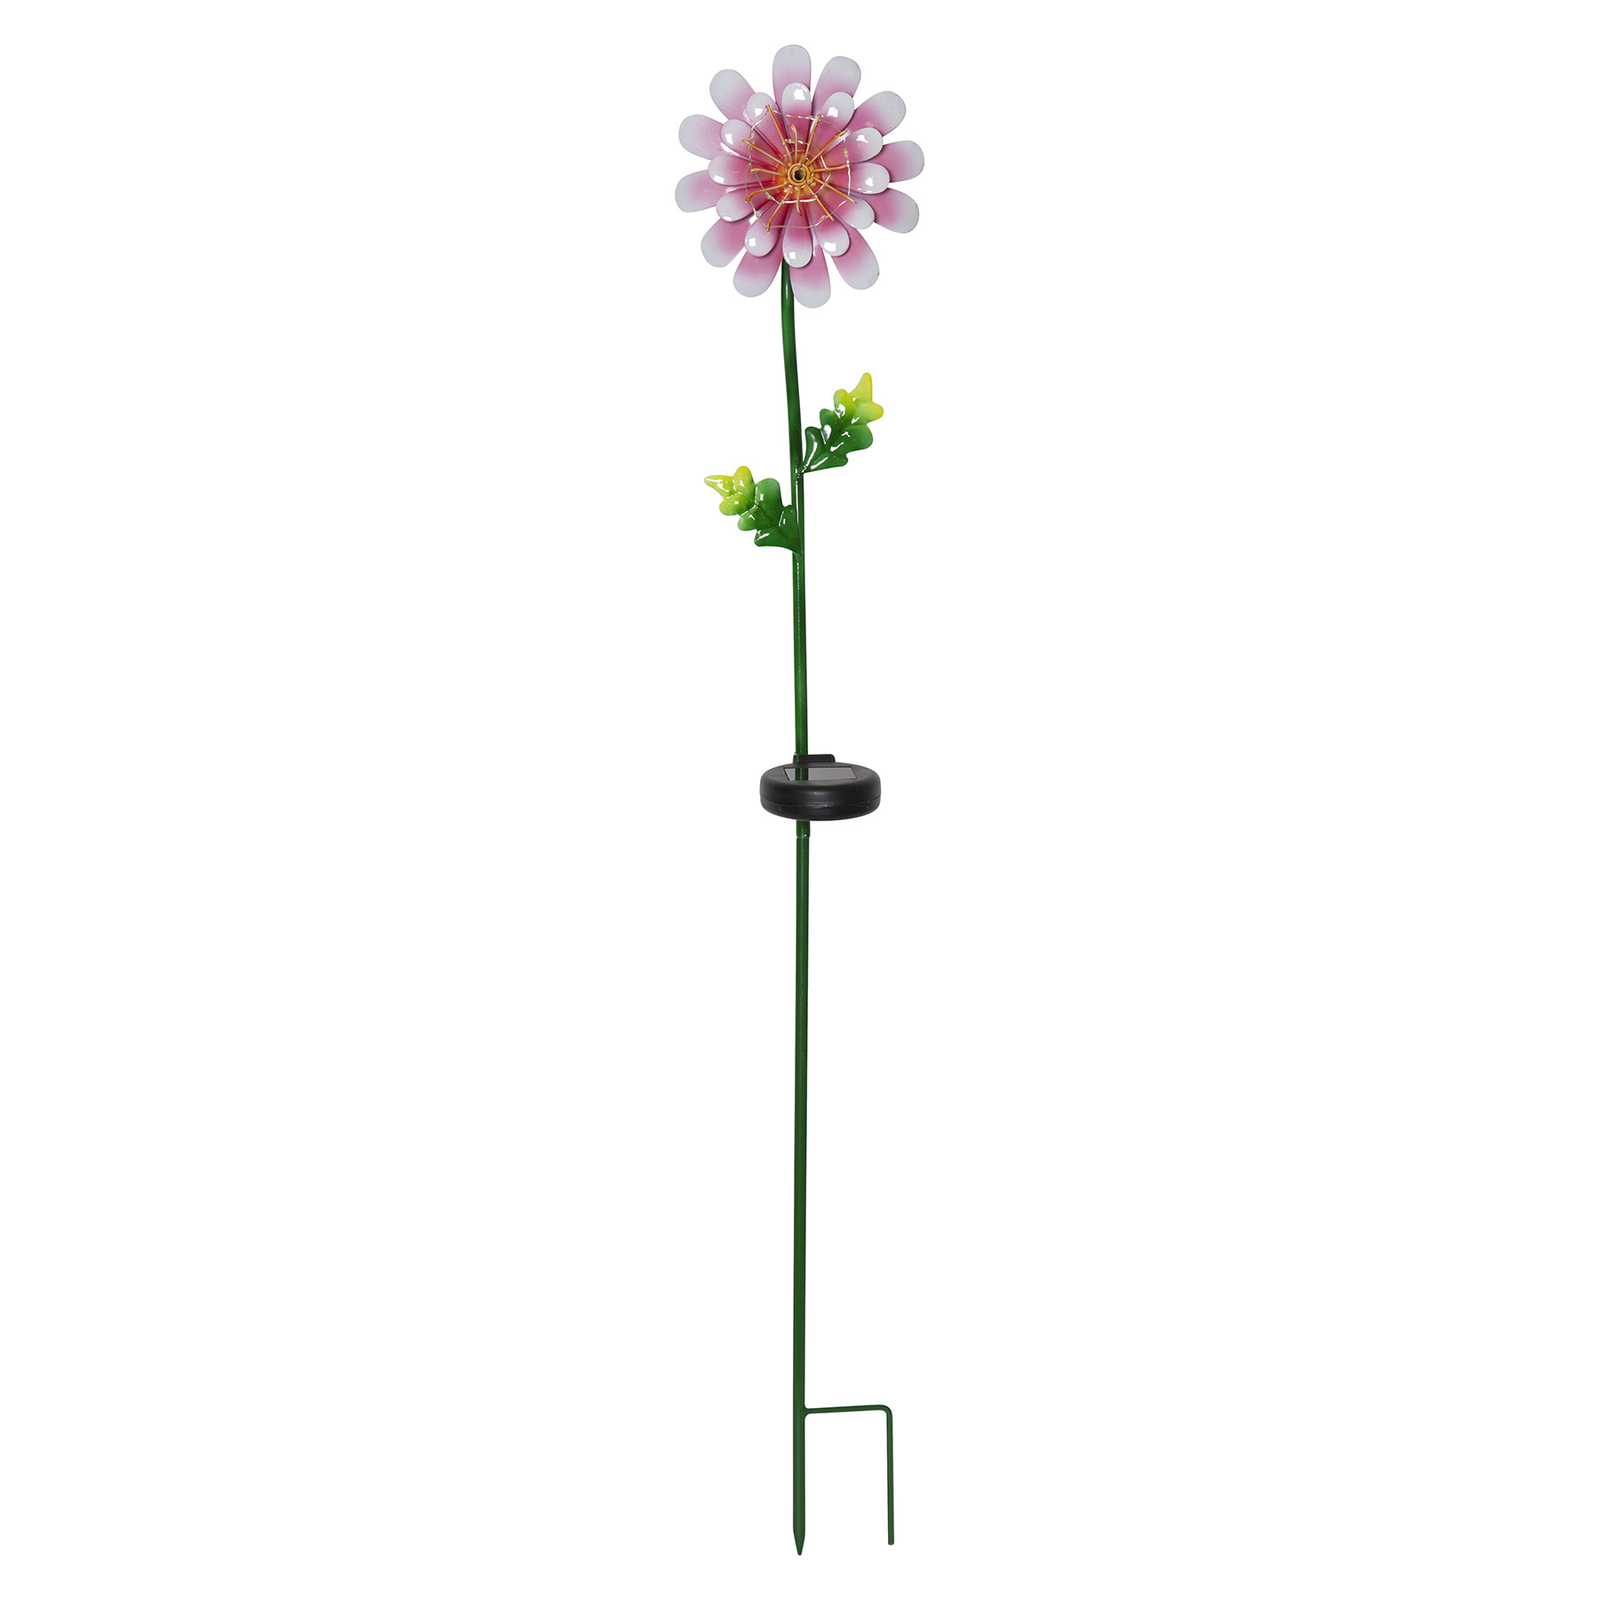 Pink Daisy LED napelemes lámpa virág alakú